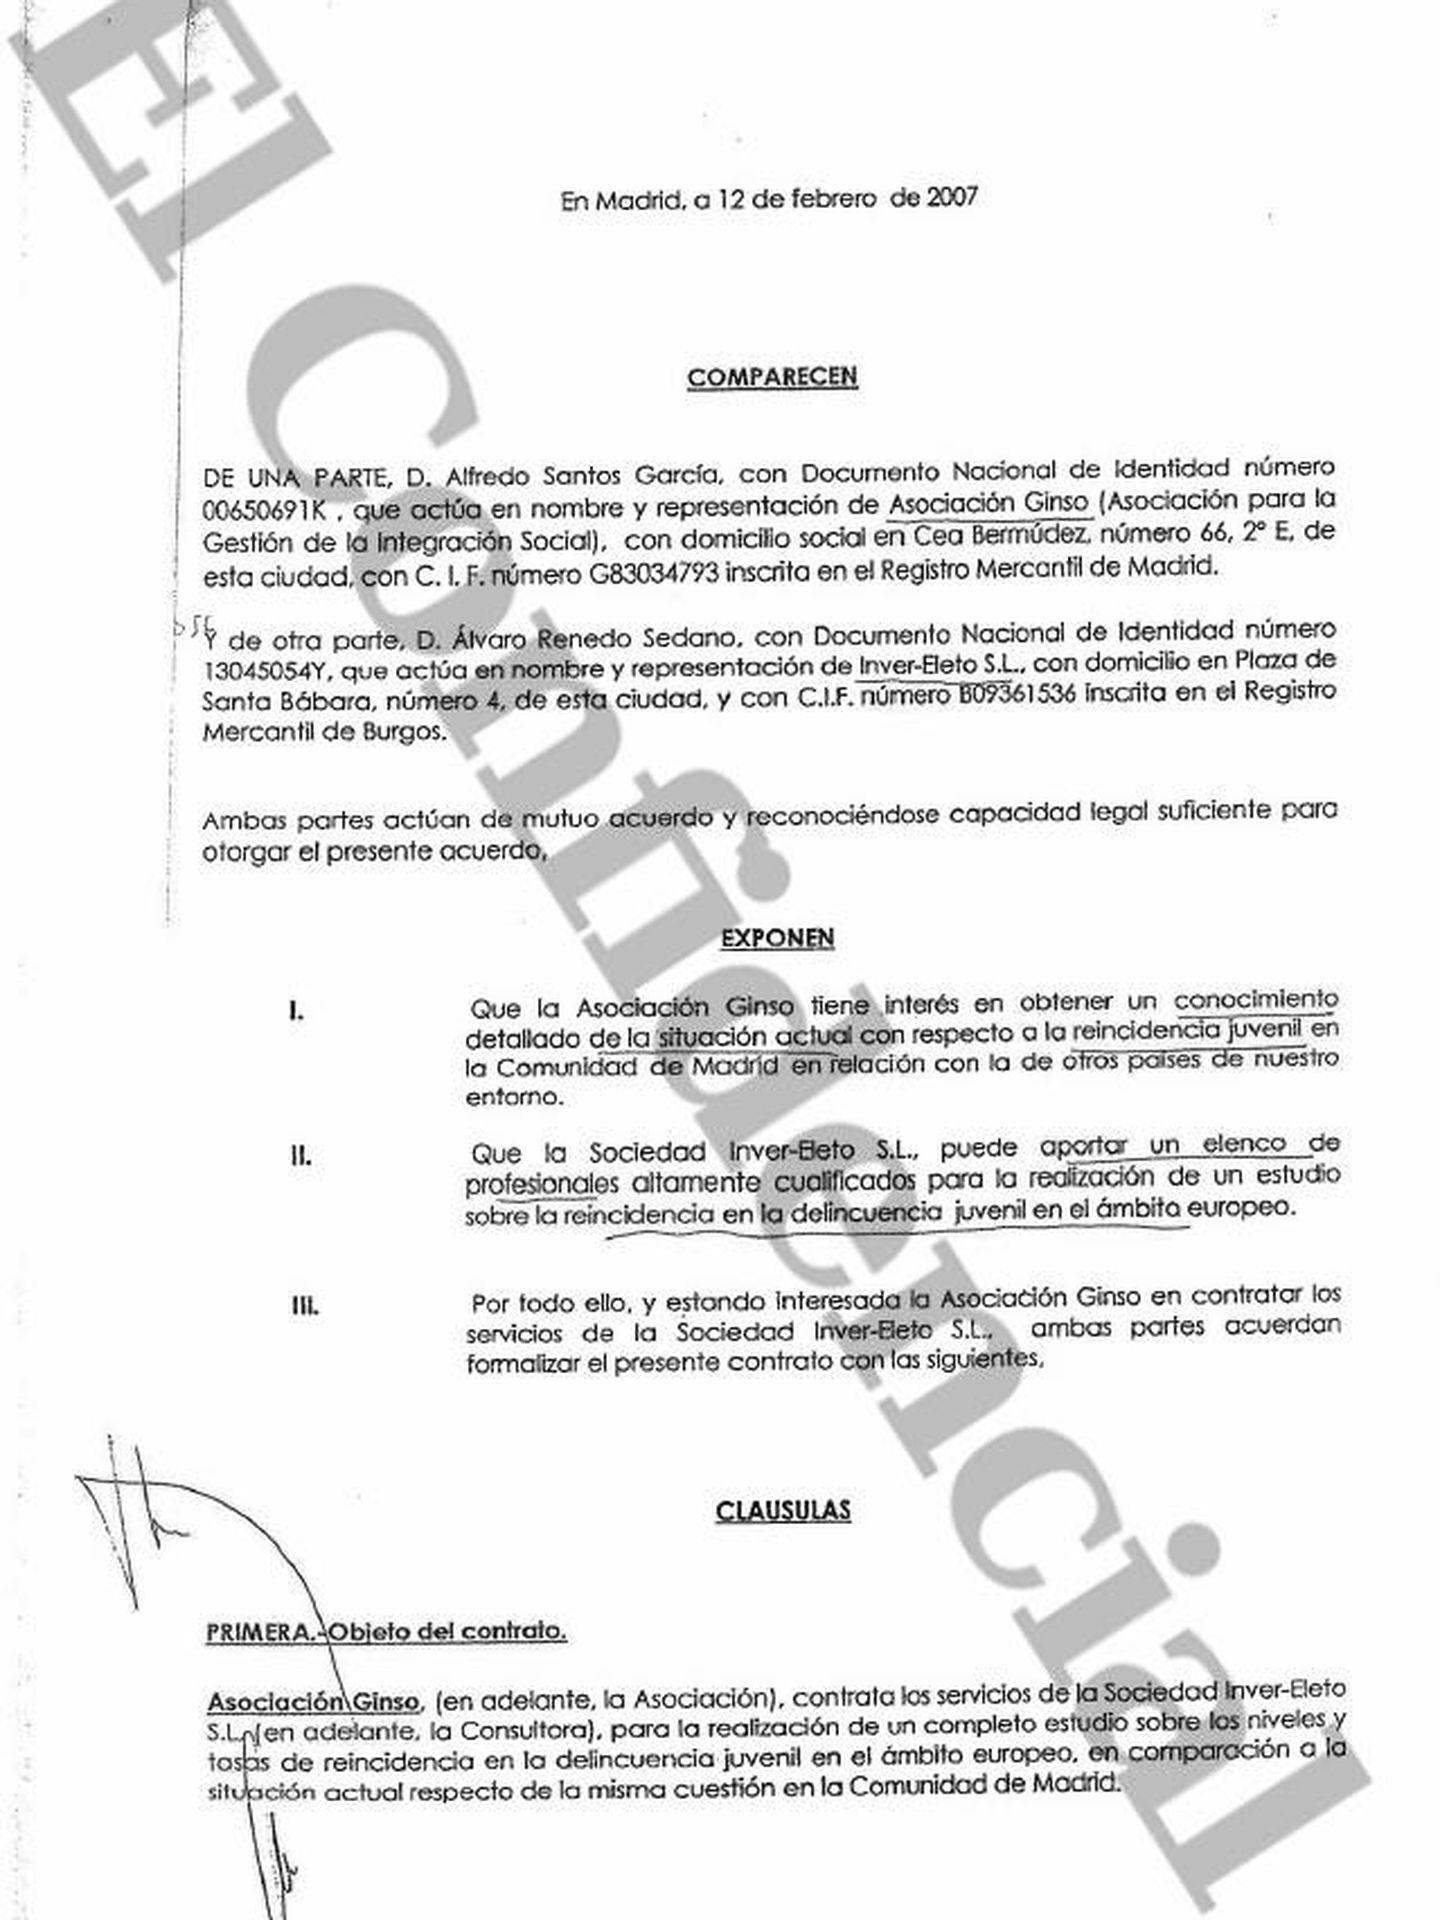 Convenios firmados entre Ginso e Inver-Eleto para justificar los supuestos trabajos de consultoría, aportados también por Granados en la Audiencia Nacional.